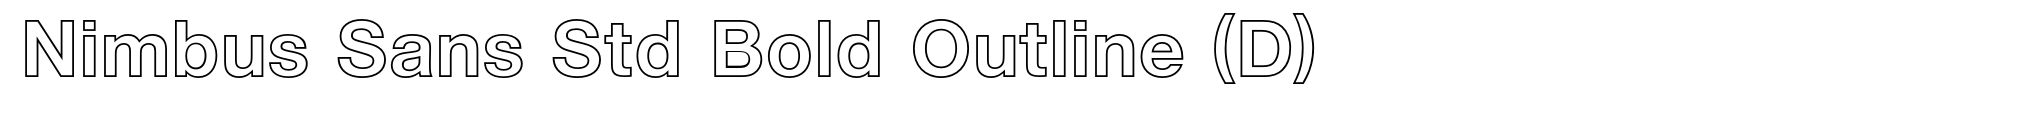 Nimbus Sans Std Bold Outline (D) image